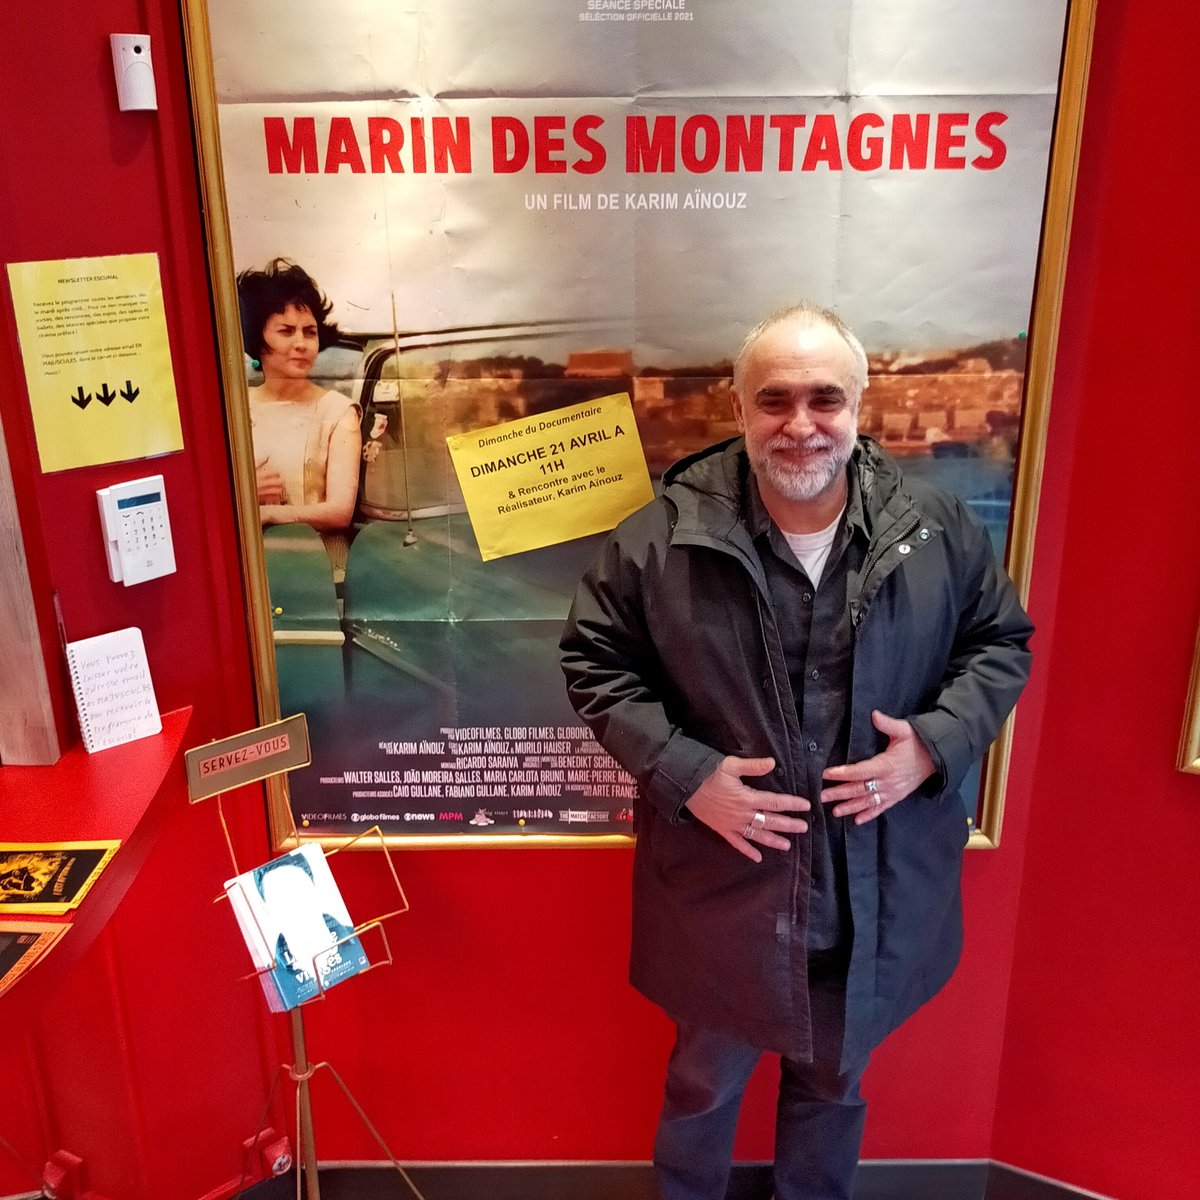 Très très belle séance ce matin, de MARIN DES MONTAGNES, de Karim Aïnouz, suivie d'une très vivante et enrichissante discussion avec le réalisateur.

Un grand merci !

#Paris5 #Paris13 #documentaire #marindesmontagnes #KarimAïnouz #Algérie #Algerie